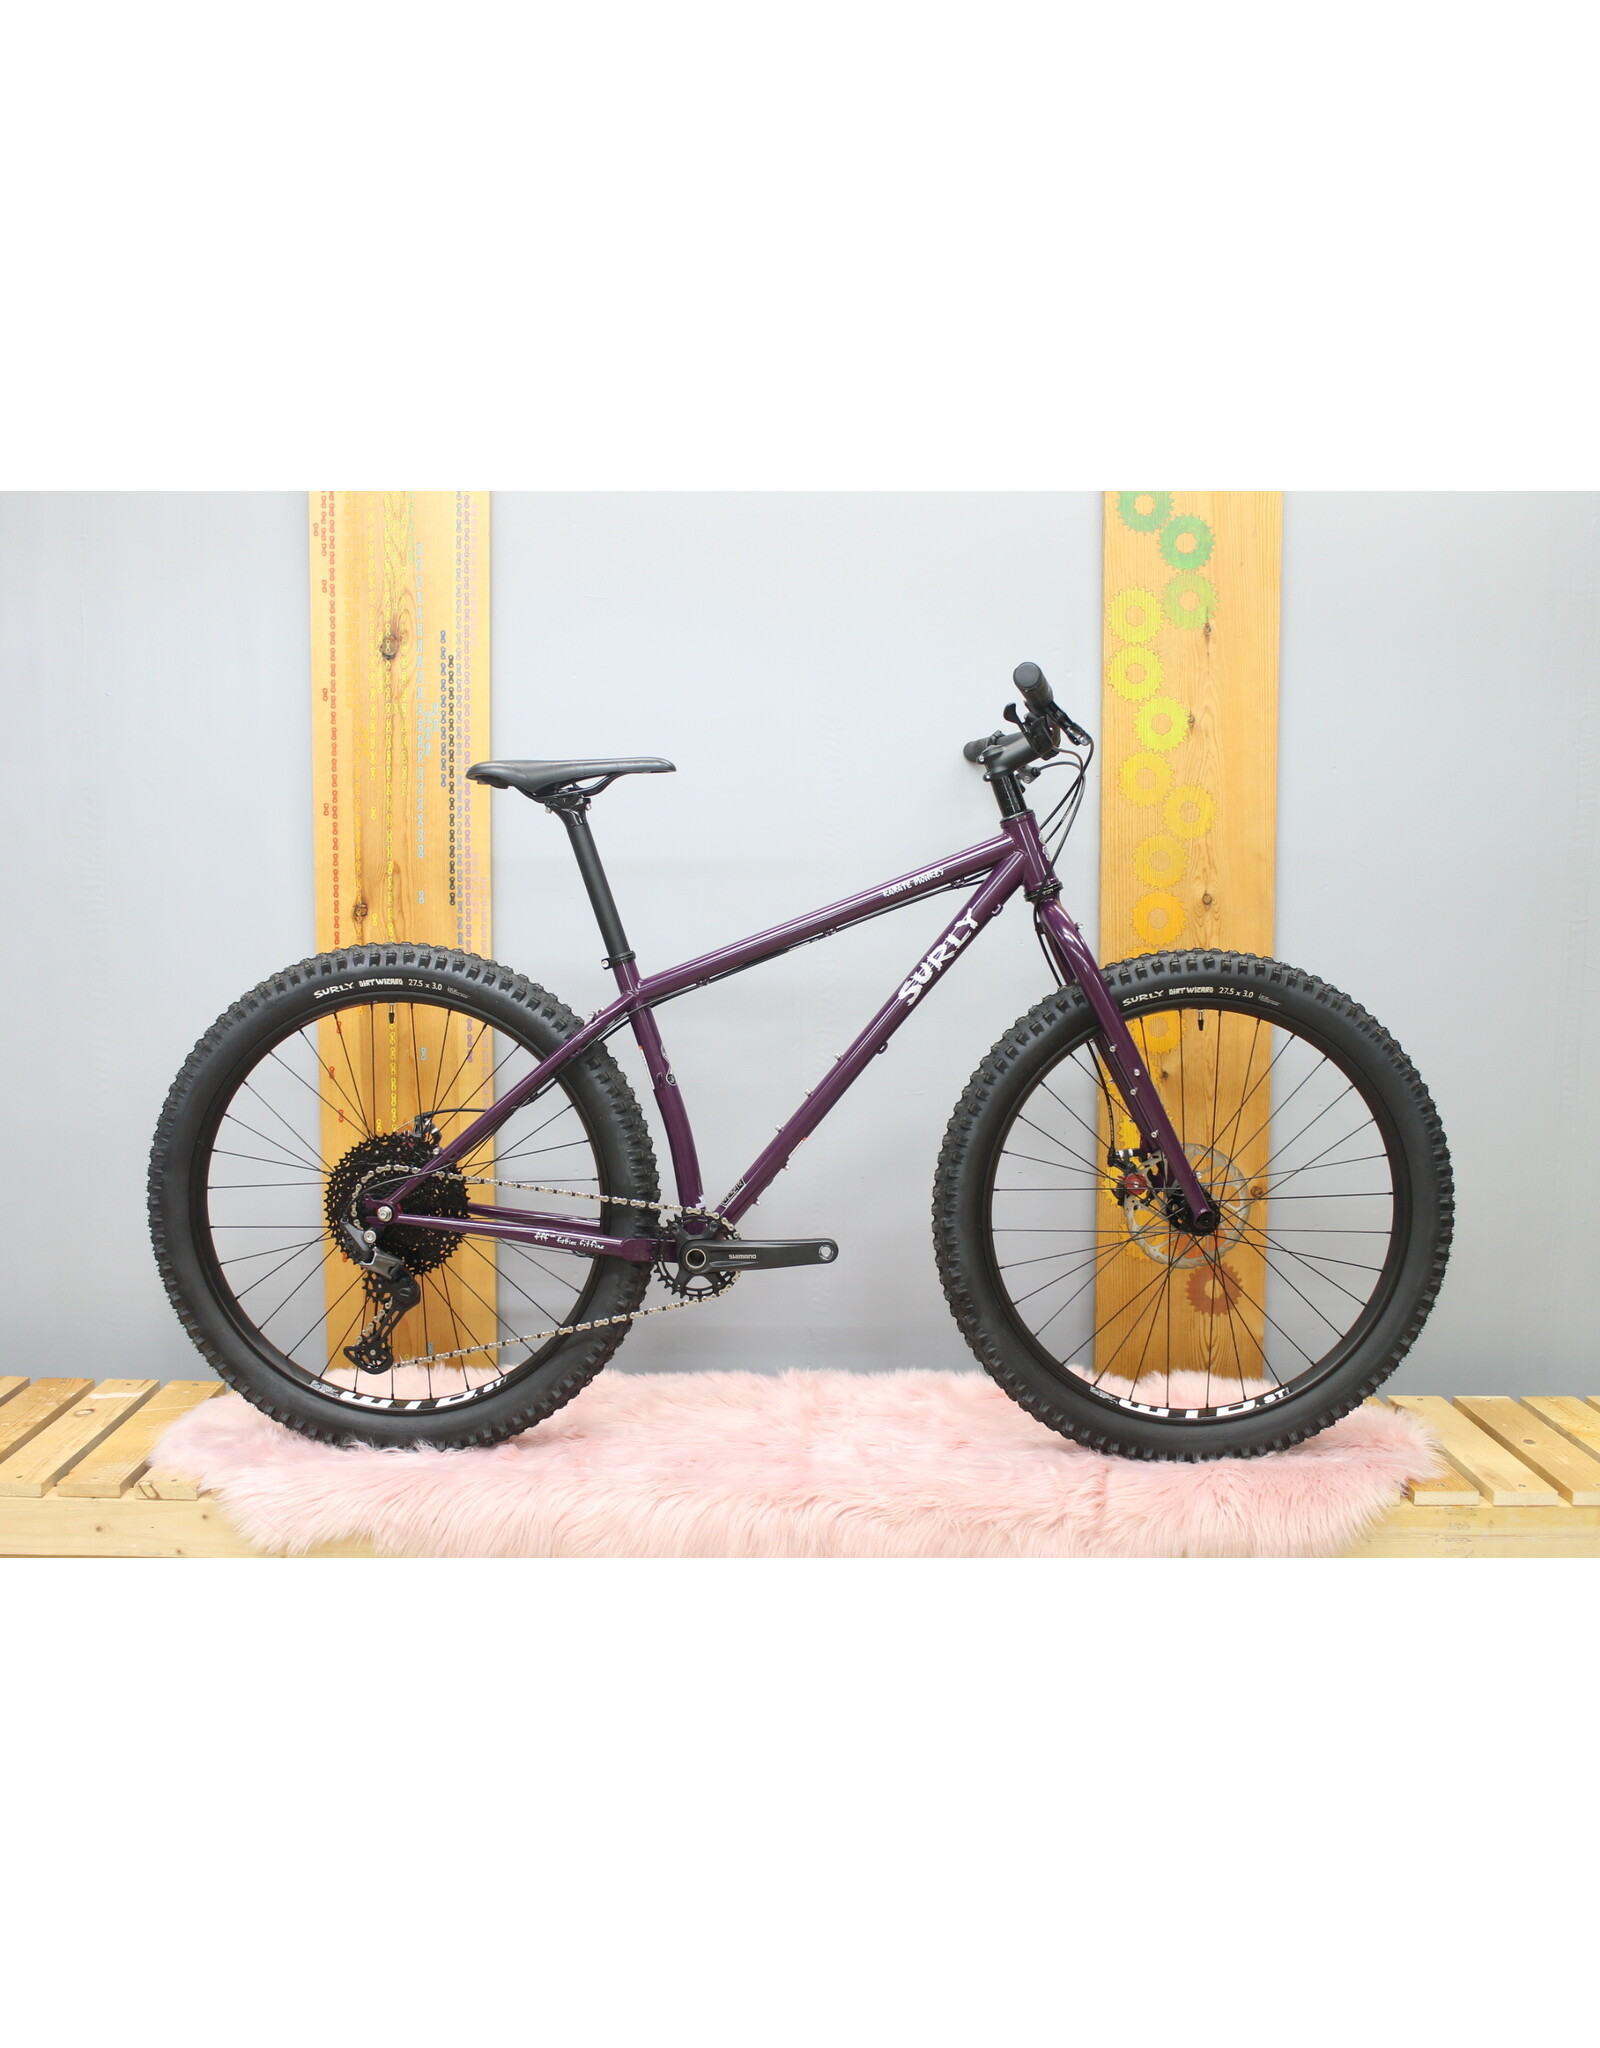 Surly Surly Karate Monkey Rigid Bike - 27.5", Steel, Eggplant Purple, Medium